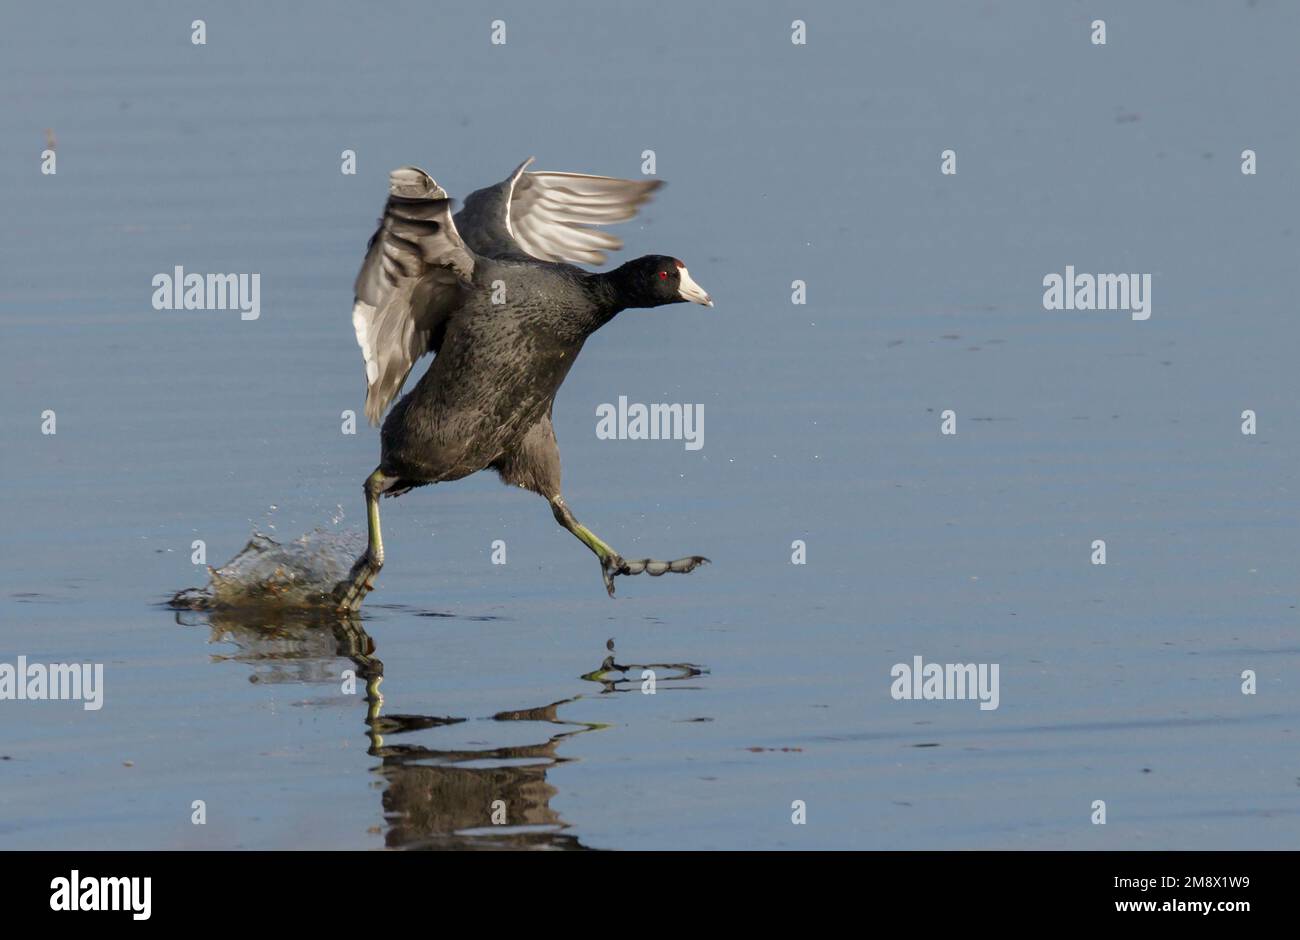 La folaga americana (Fulica americana) che corre sulla superficie dell'acqua dopo l'atterraggio, il Brazos Bend state Park, Needville, Texas, USA. Foto Stock